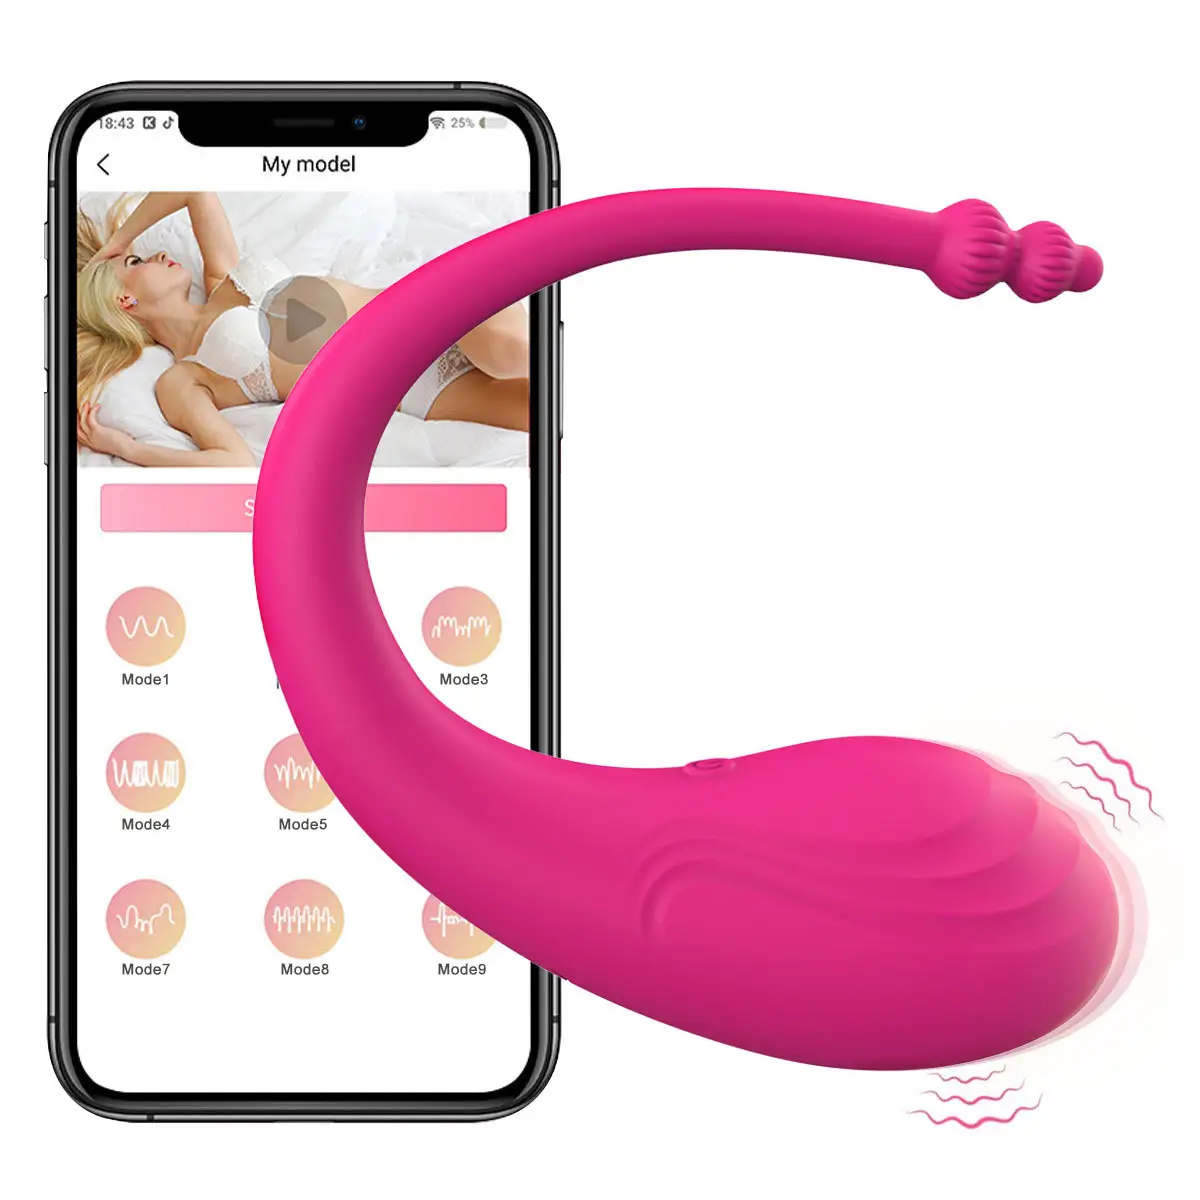 Mainan pasangan jarak jauh nirkabel Juguetes Vibrator dapat dipakai App mainan seks bola Kegel Vagina telur lompat mainan seks untuk wanita